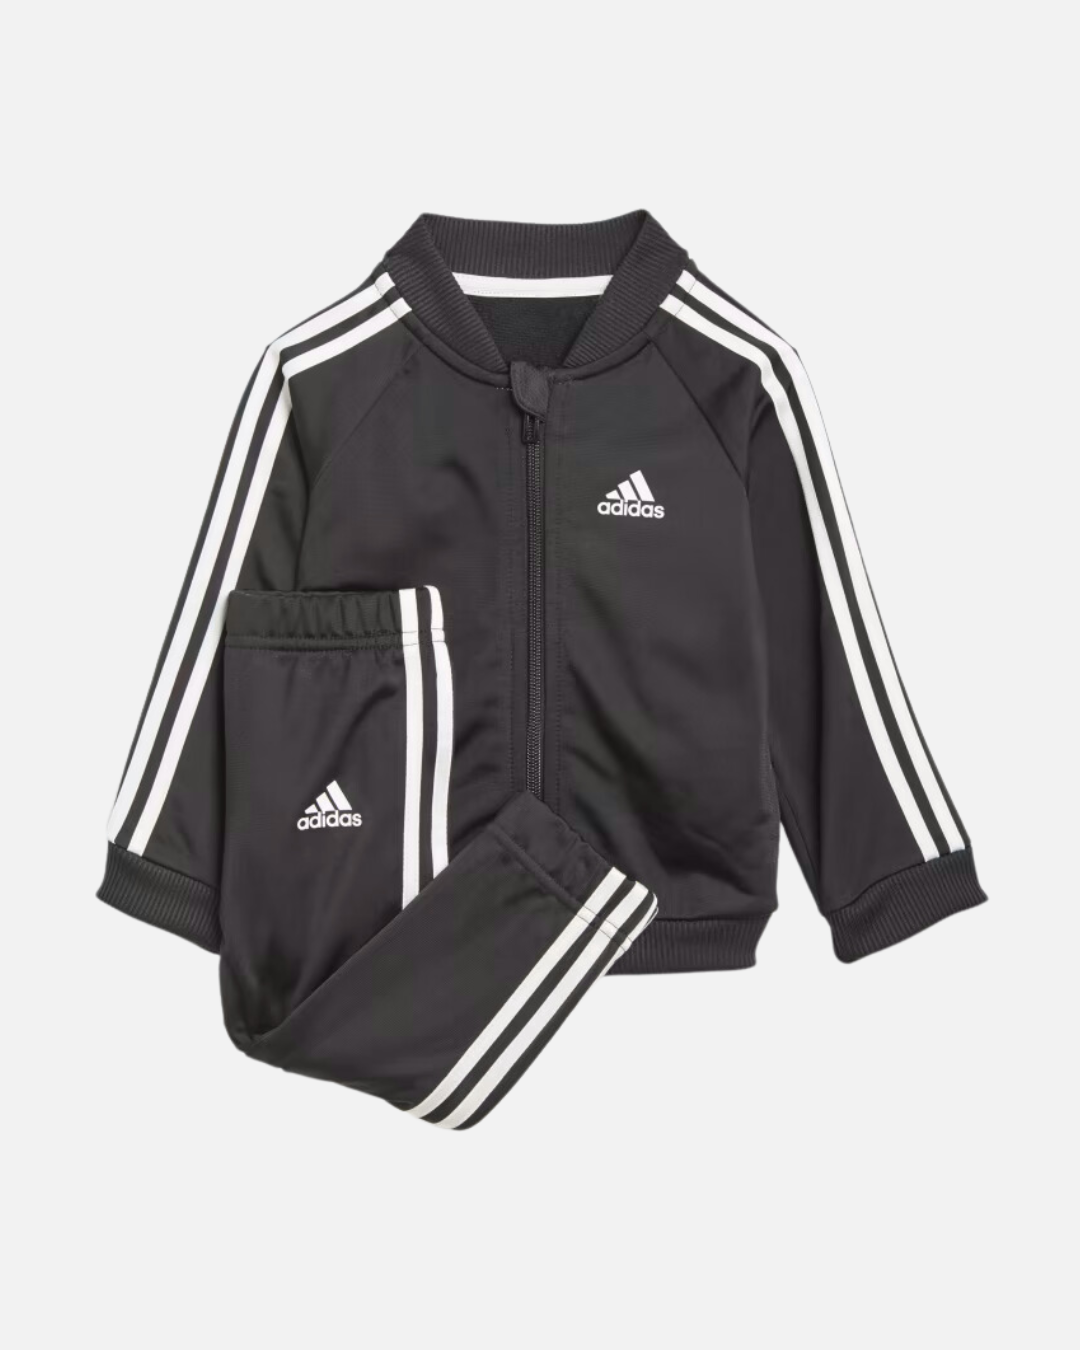 Adidas Baby Tracksuit Set - Black/White